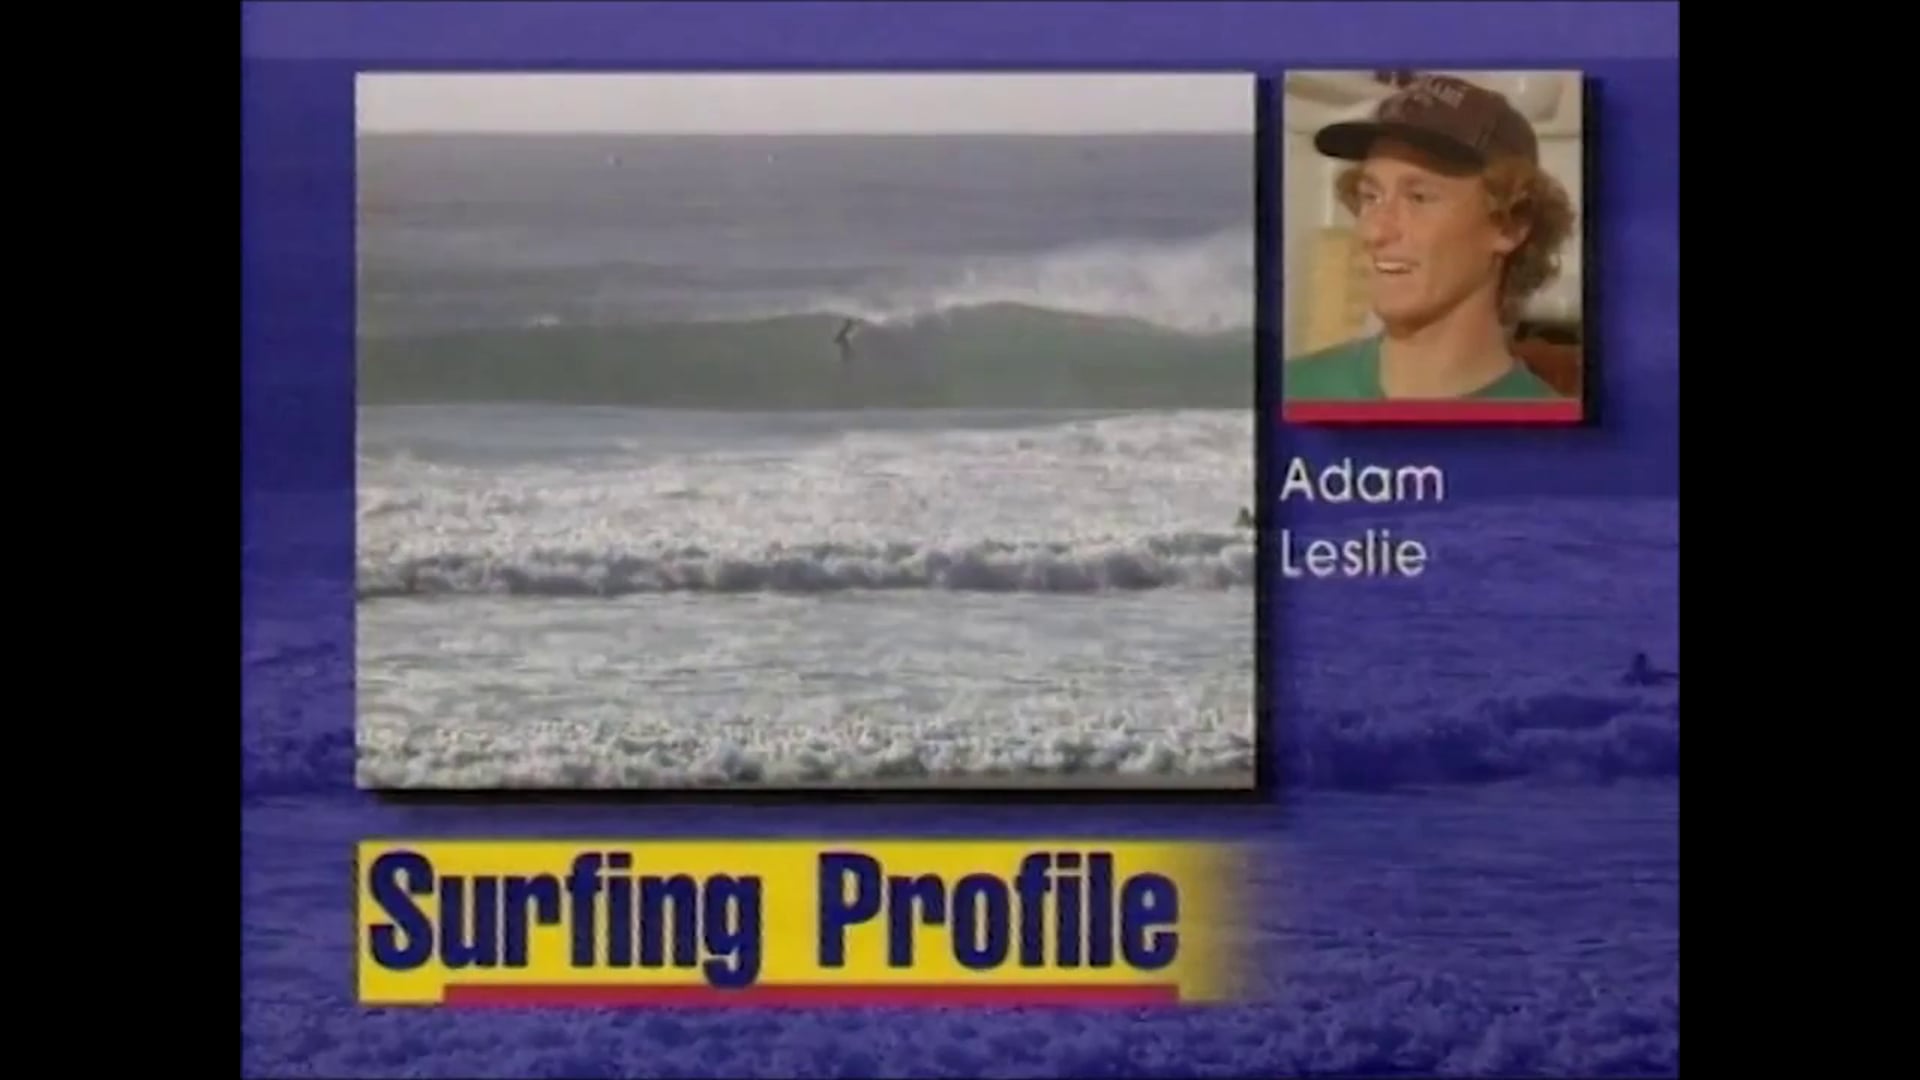 Adam Leslie – May 1995